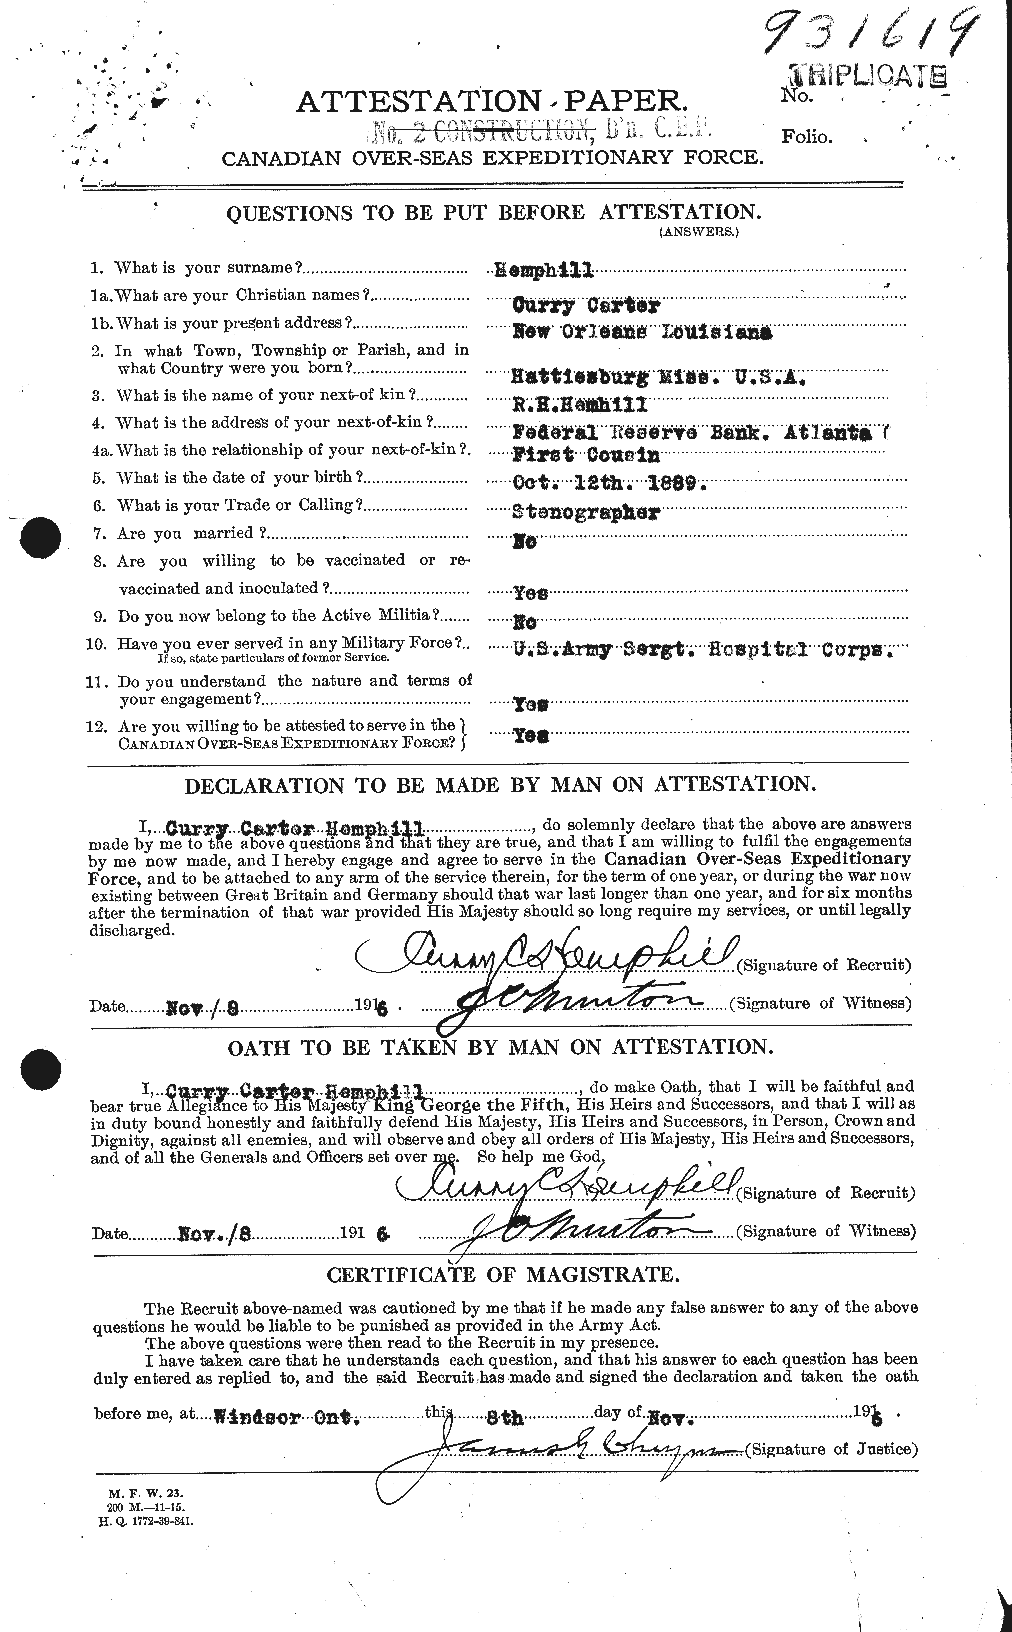 Dossiers du Personnel de la Première Guerre mondiale - CEC 385274a